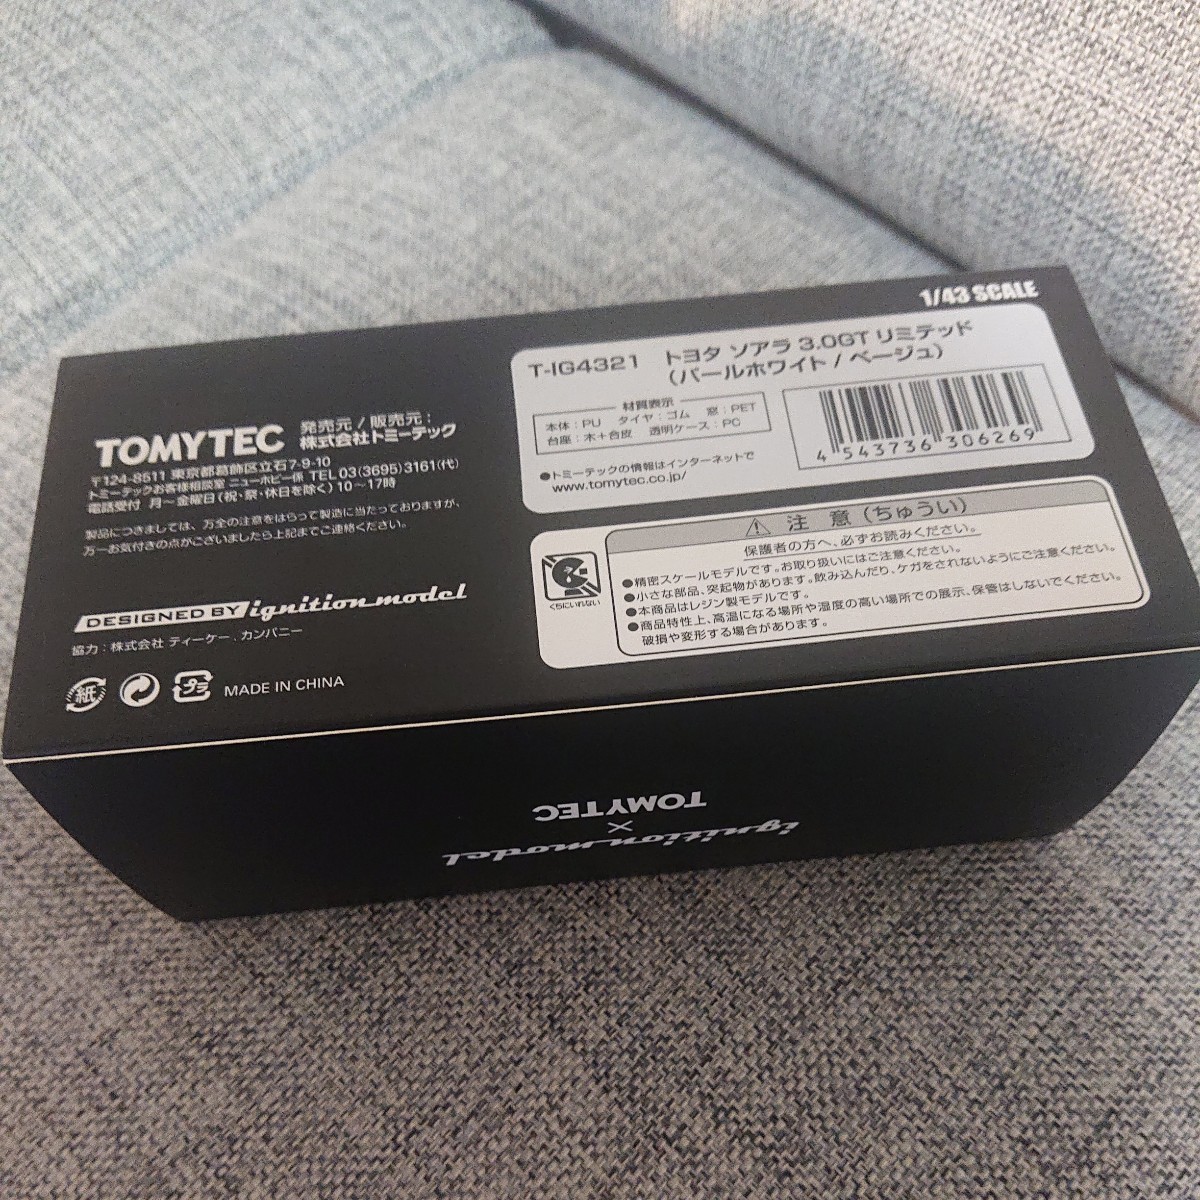 【送料無料】美品 イグニションモデル トミーテック TOMYTEC T-IG4321 1/43 トヨタ ソアラ 3.0GT リミテッド パールホワイト/ベージュの画像4